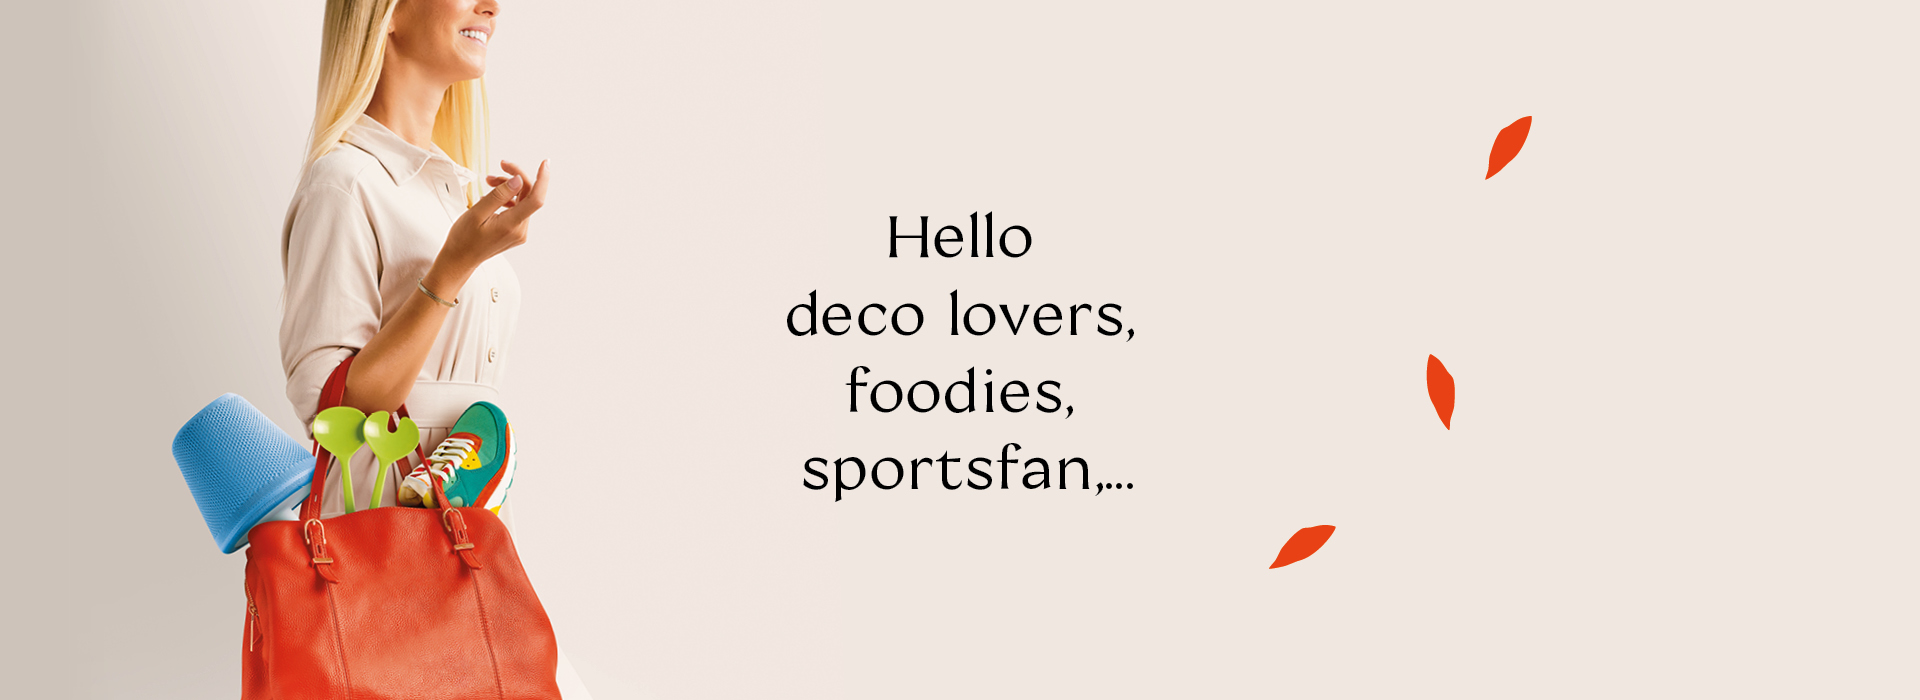 Hello deco lovers, foodies, sportsfan